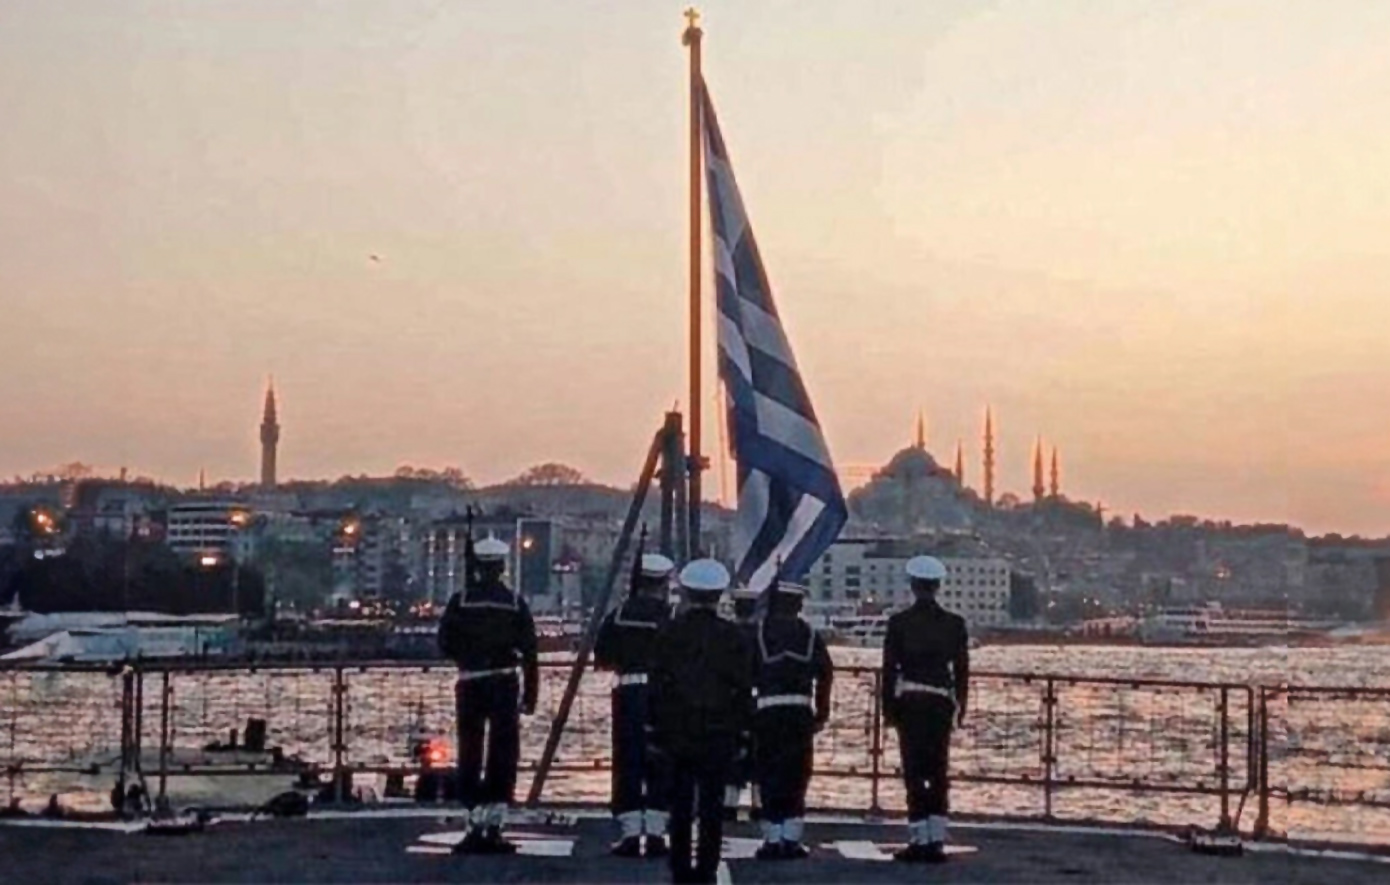 Η φωτογραφία της φρεγάτας «Θεμιστοκλής» να υψώνει την ελληνική σημαία στον Βόσπορο κάνει τον γύρο του διαδικτύου